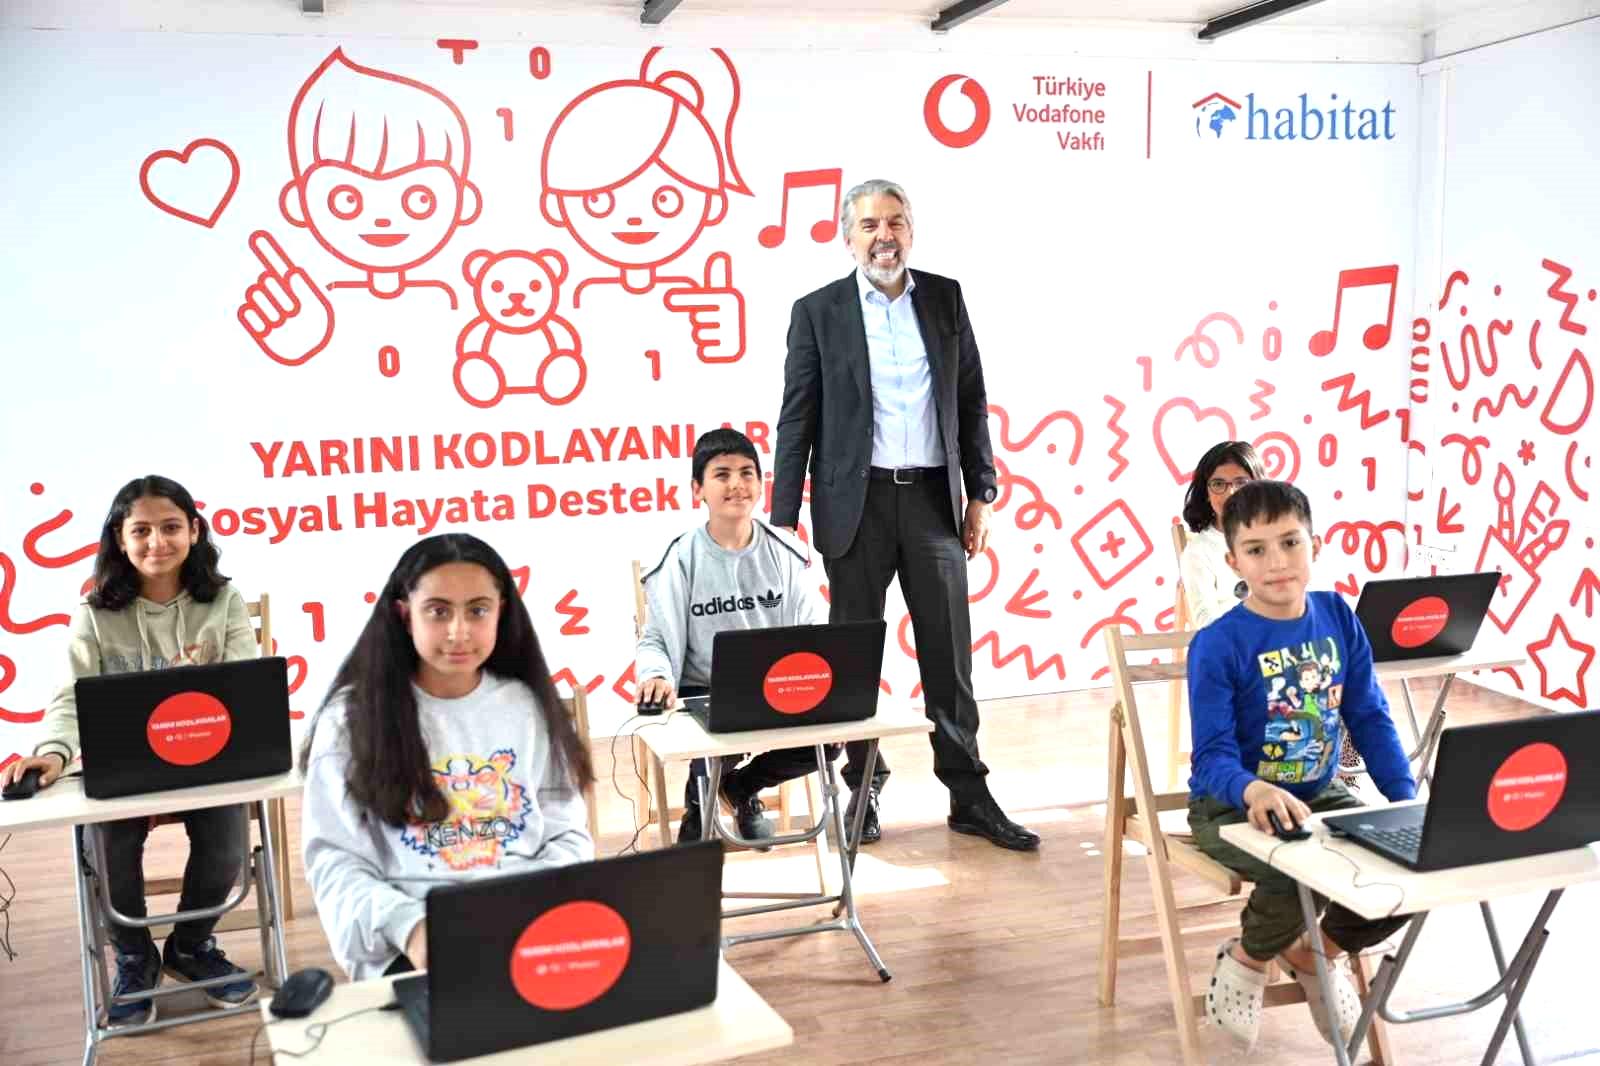 Türkiye Vodafone Vakfı’ndan 16 yılda 1,5 milyar TL’lik sosyal katkı